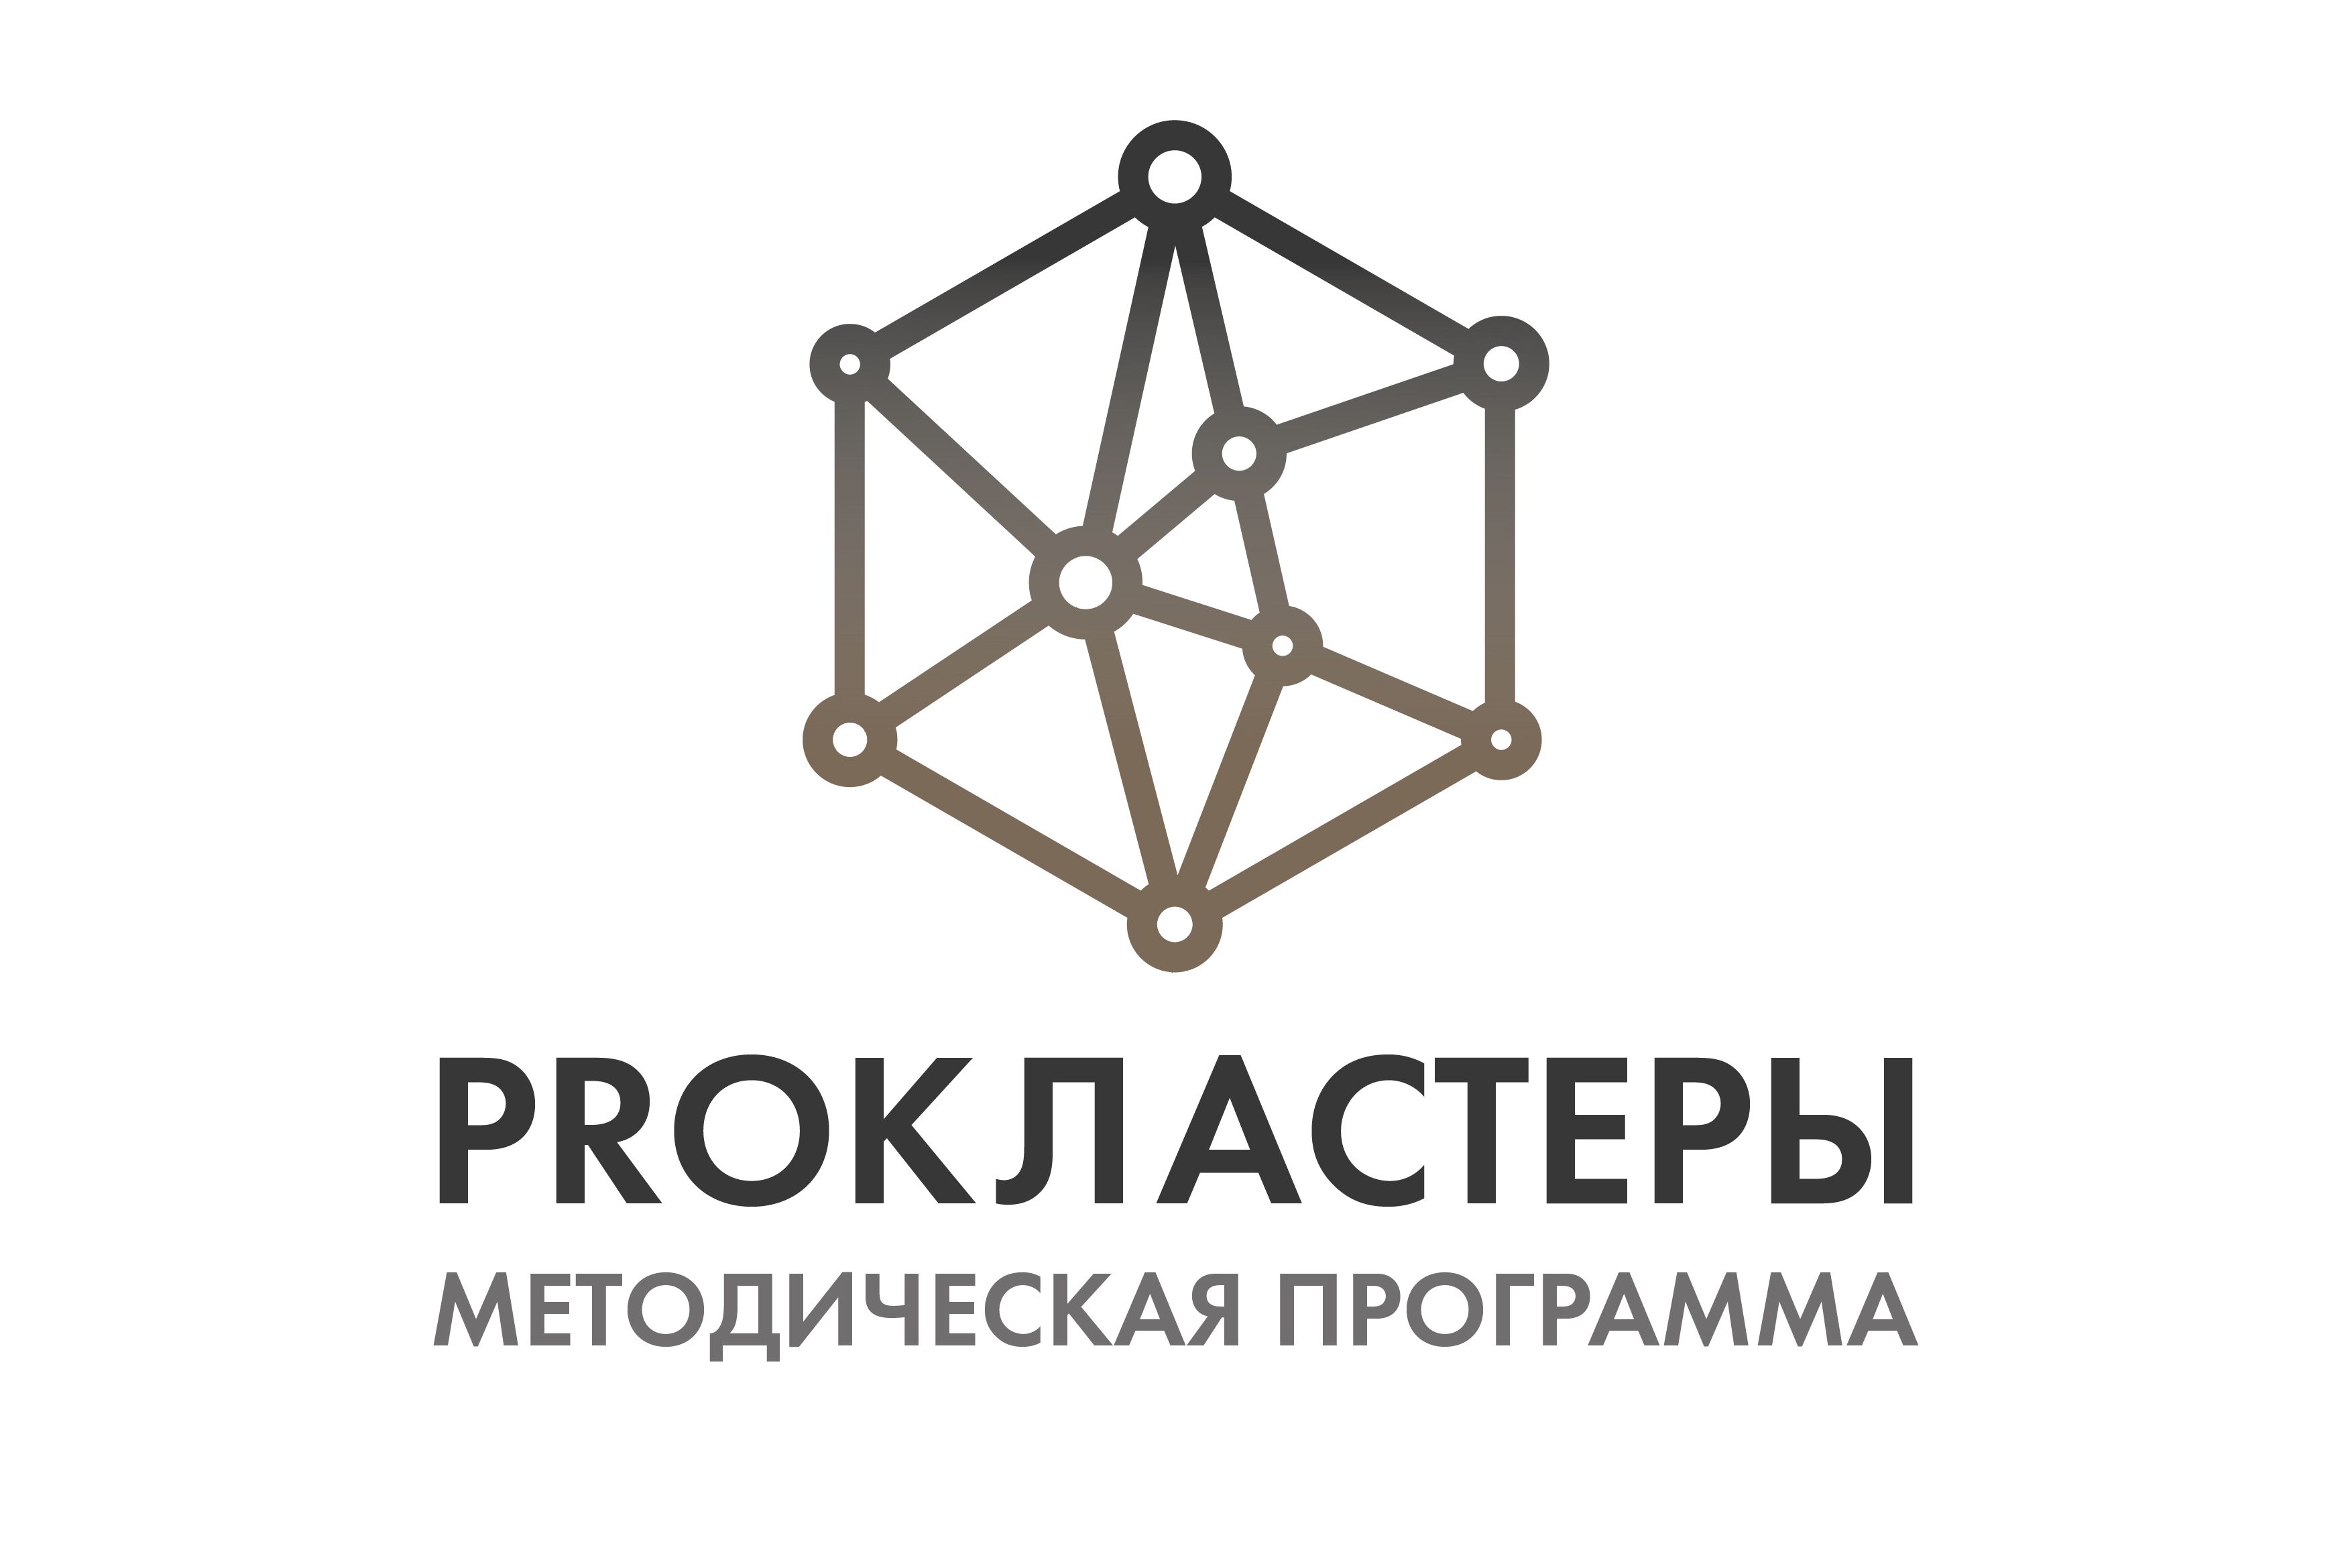 Минпромторг России и Институт экономики знаний запустили методическую программу «PROКЛАСТЕРЫ»